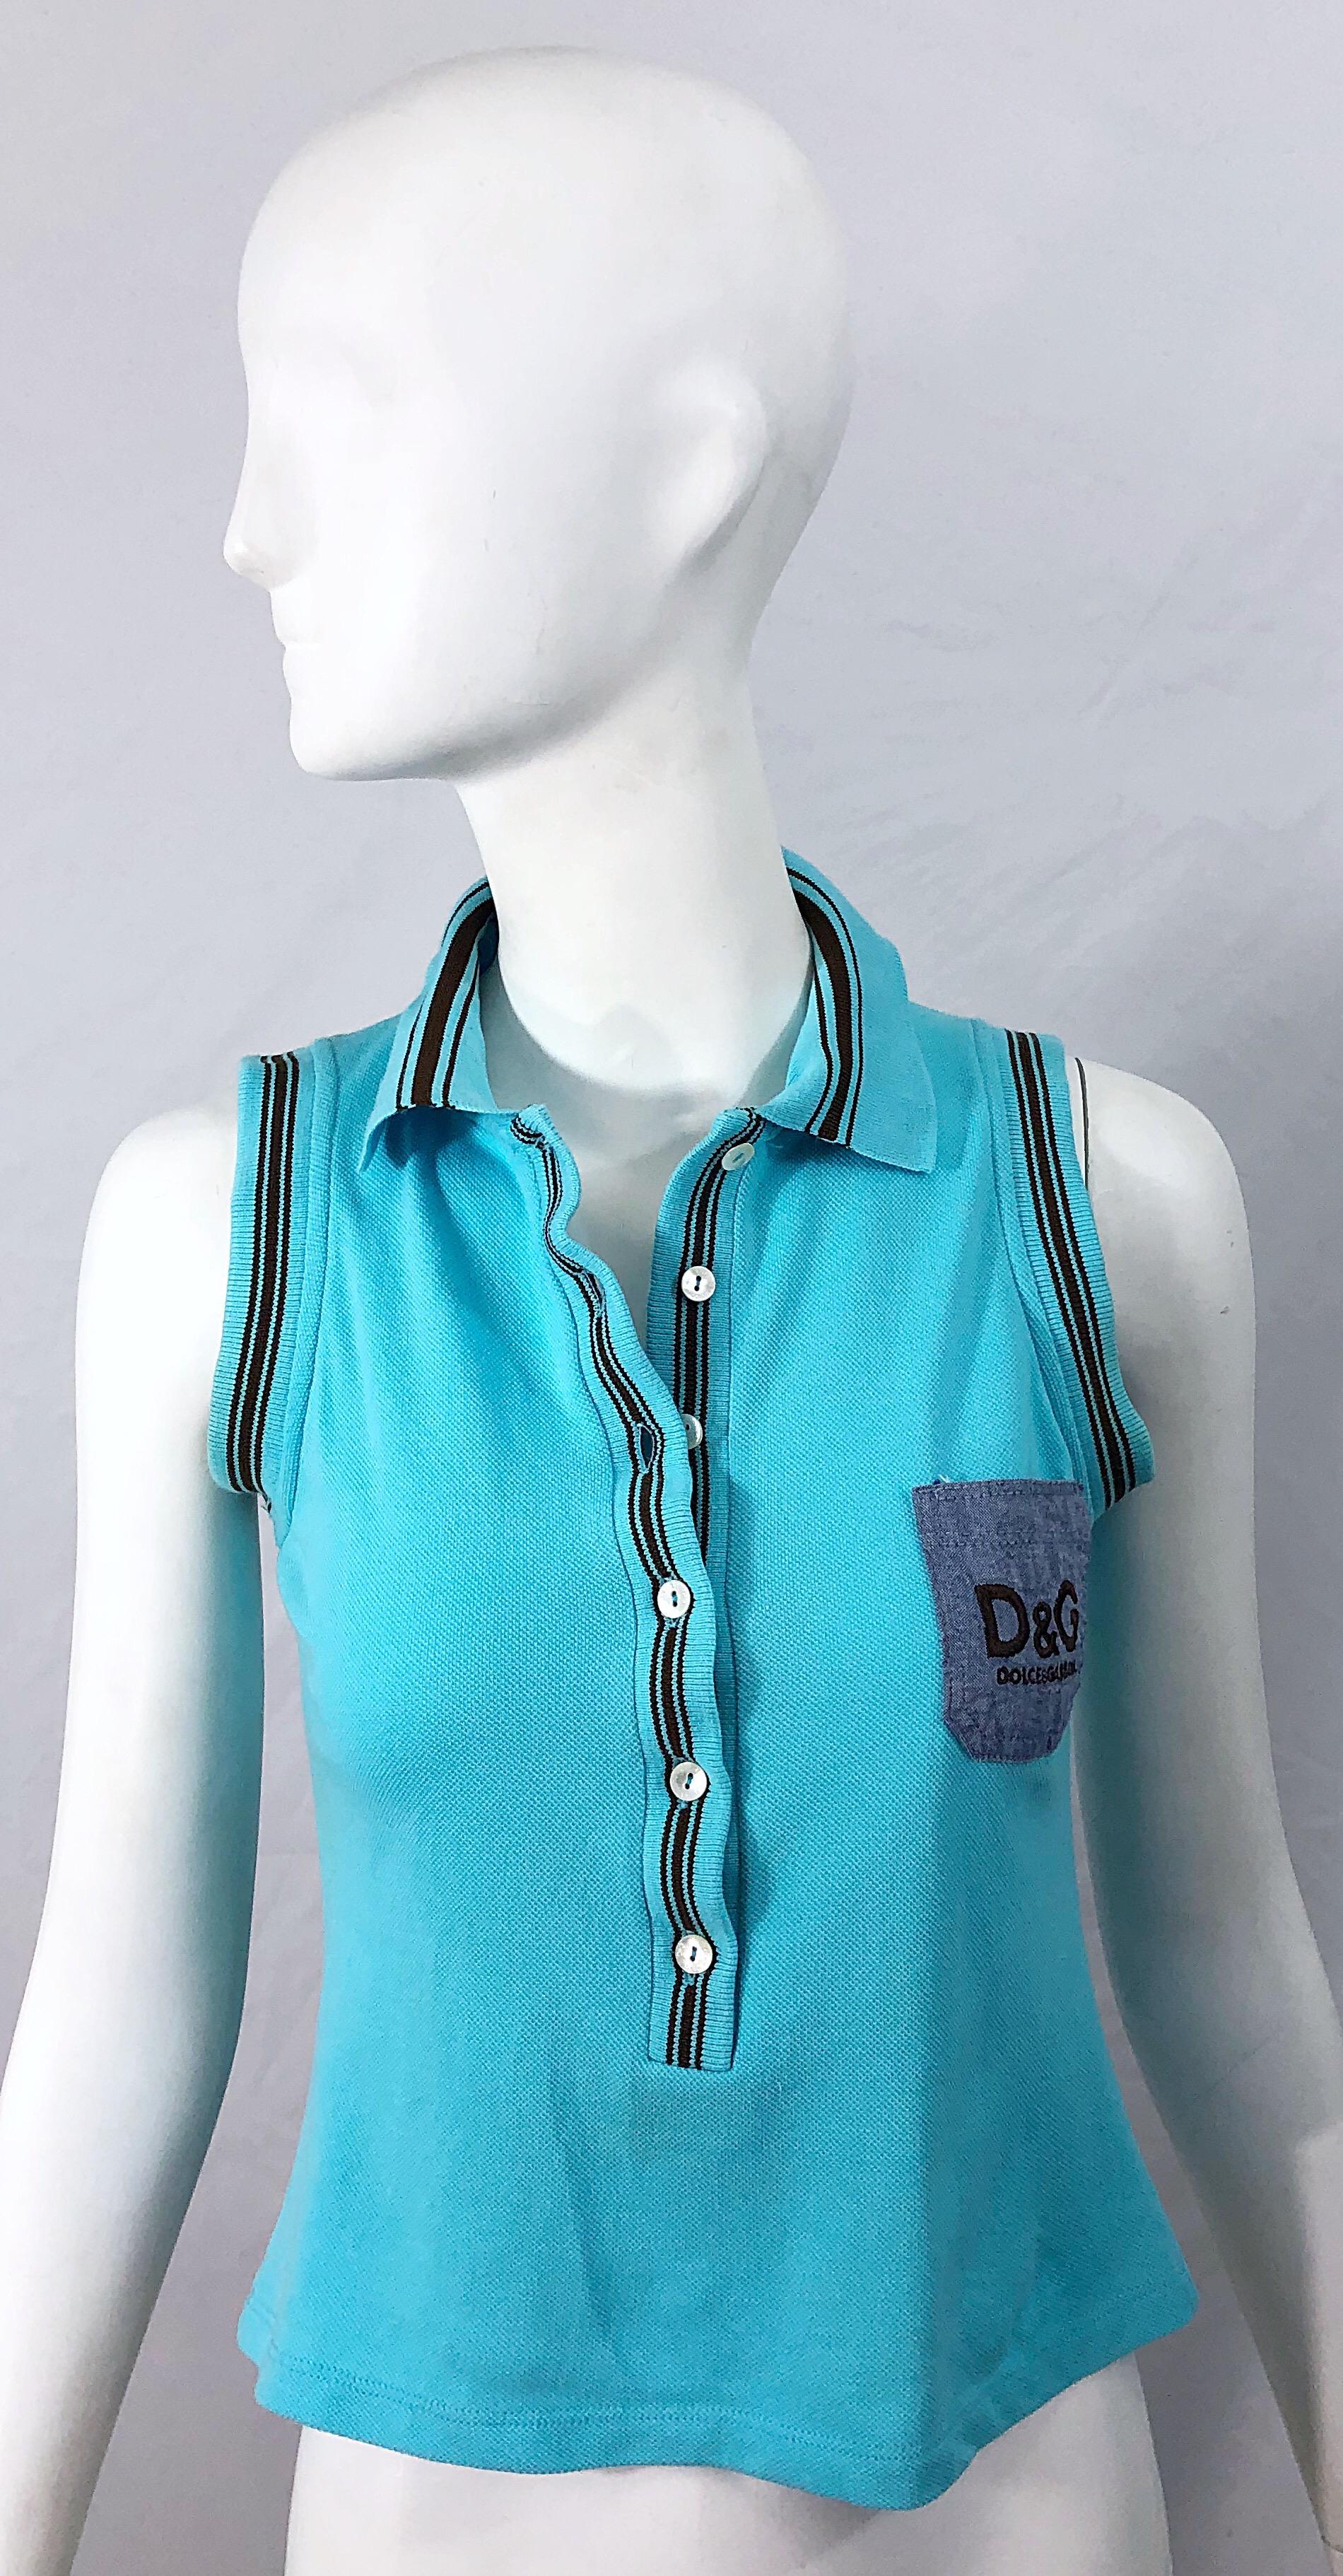 Stilvolle späten 1990er DOLCE AND GABBANA türkis blau und braun Logo stricken crop top ! Weicher Baumwollstrick mit einem Chambray-Denim-Taschenaufnäher auf der linken Brust, auf dem D&G in Braun aufgestickt ist. Knöpfe auf der Vorderseite. 
In